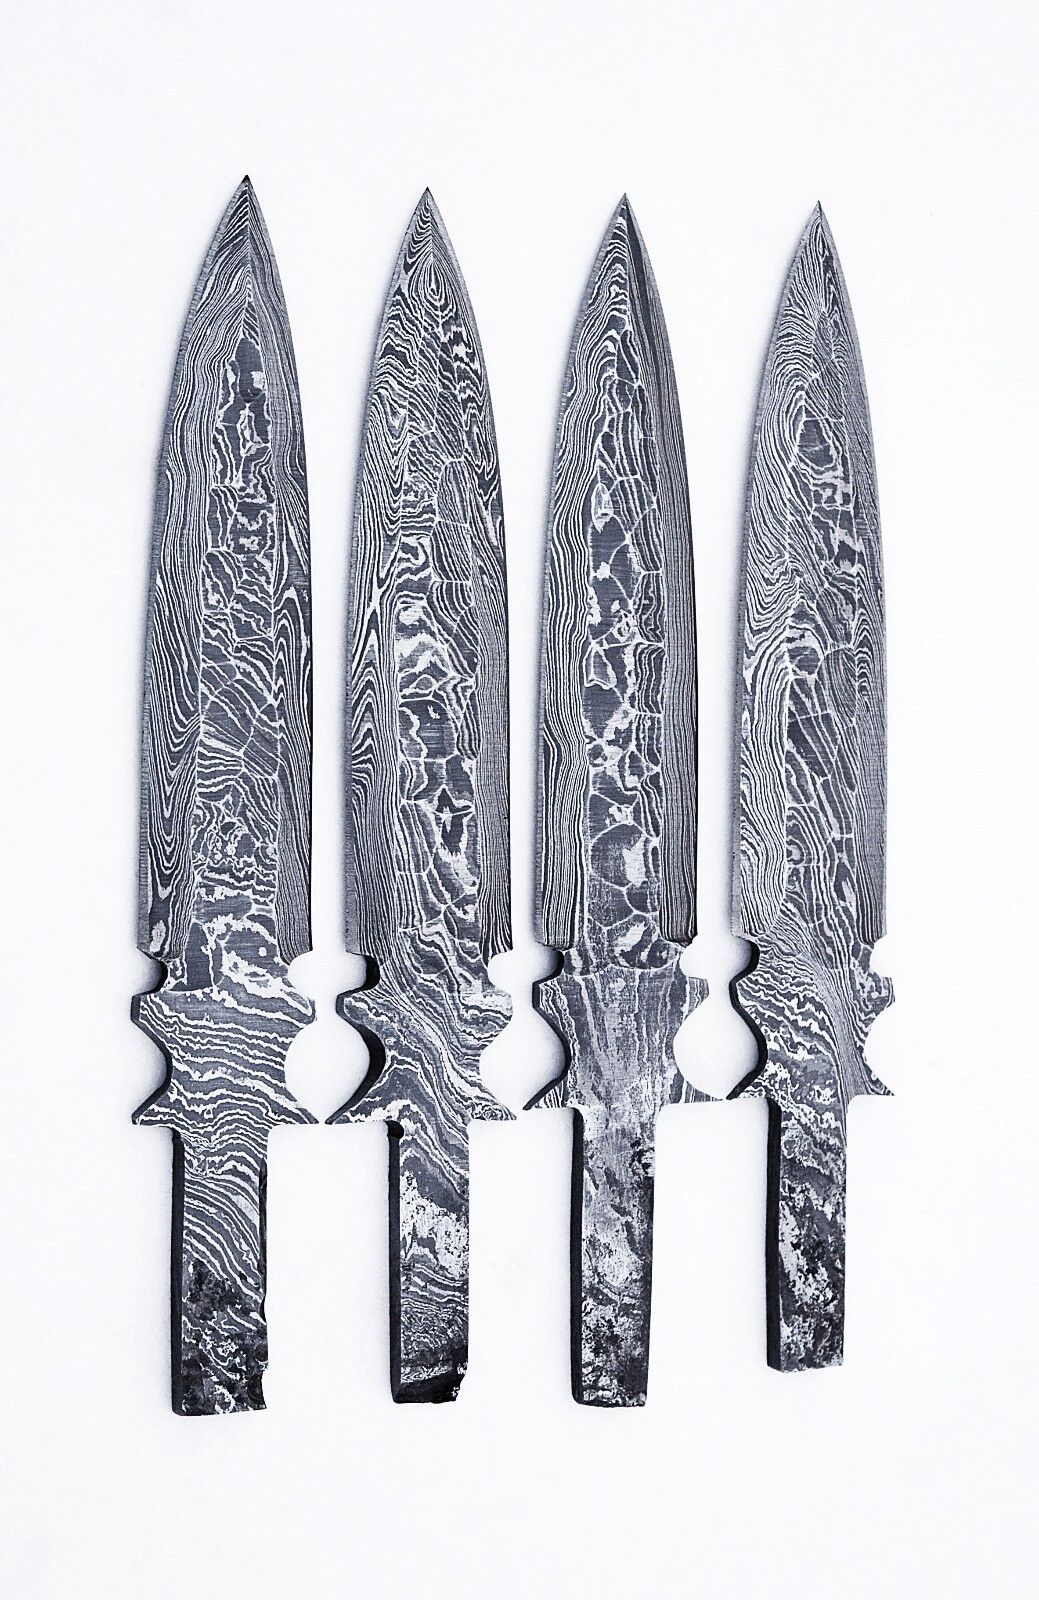 4xDamascus steel BLANK BLADES (FLINT KNAPPED FINISH ) FOR DAGGER KNIFE MAKING 